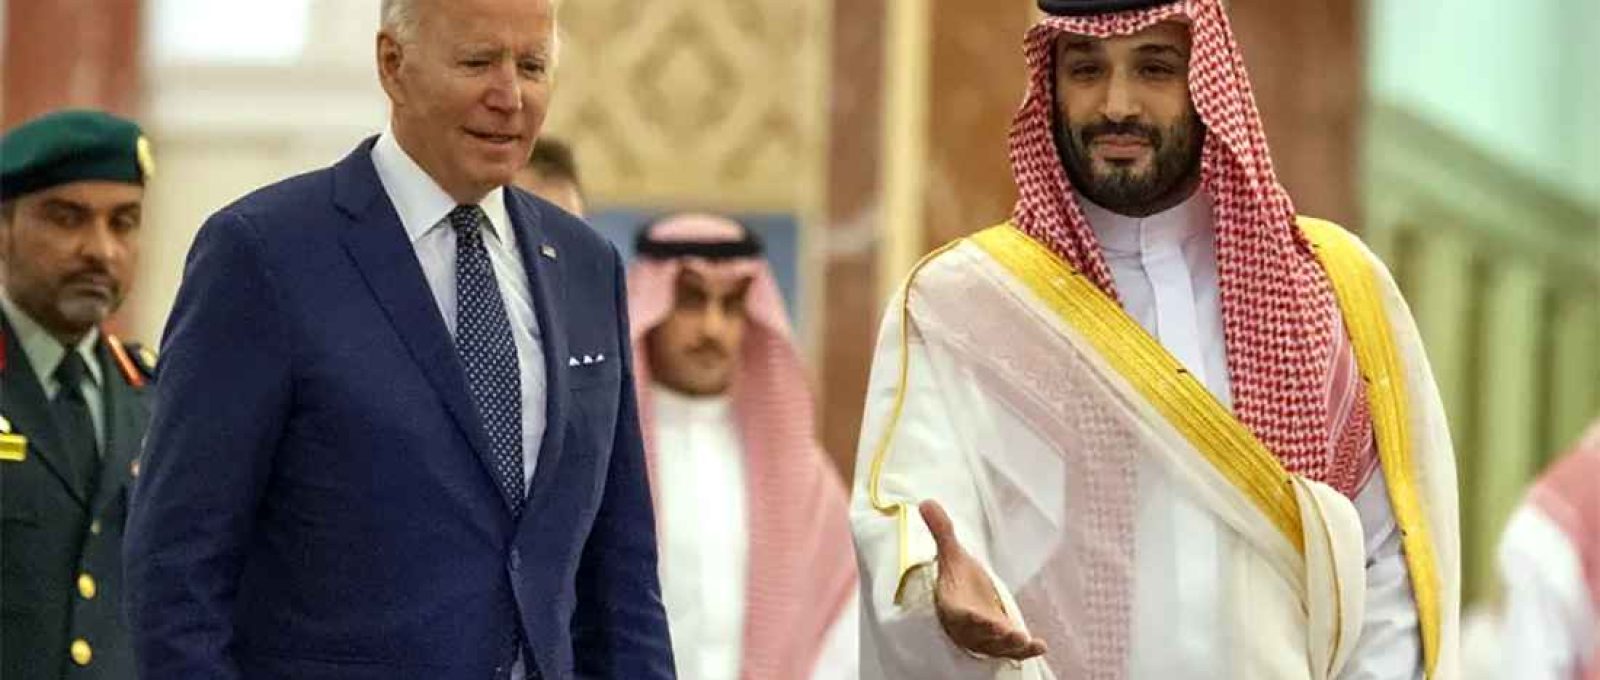 O presidente dos EUA, Joe Biden, e o príncipe-herdeiro da Arábia Saudita, Mohammed bin Salman (Royal Court of Saudi Arabia/Anadolu via Getty Images).